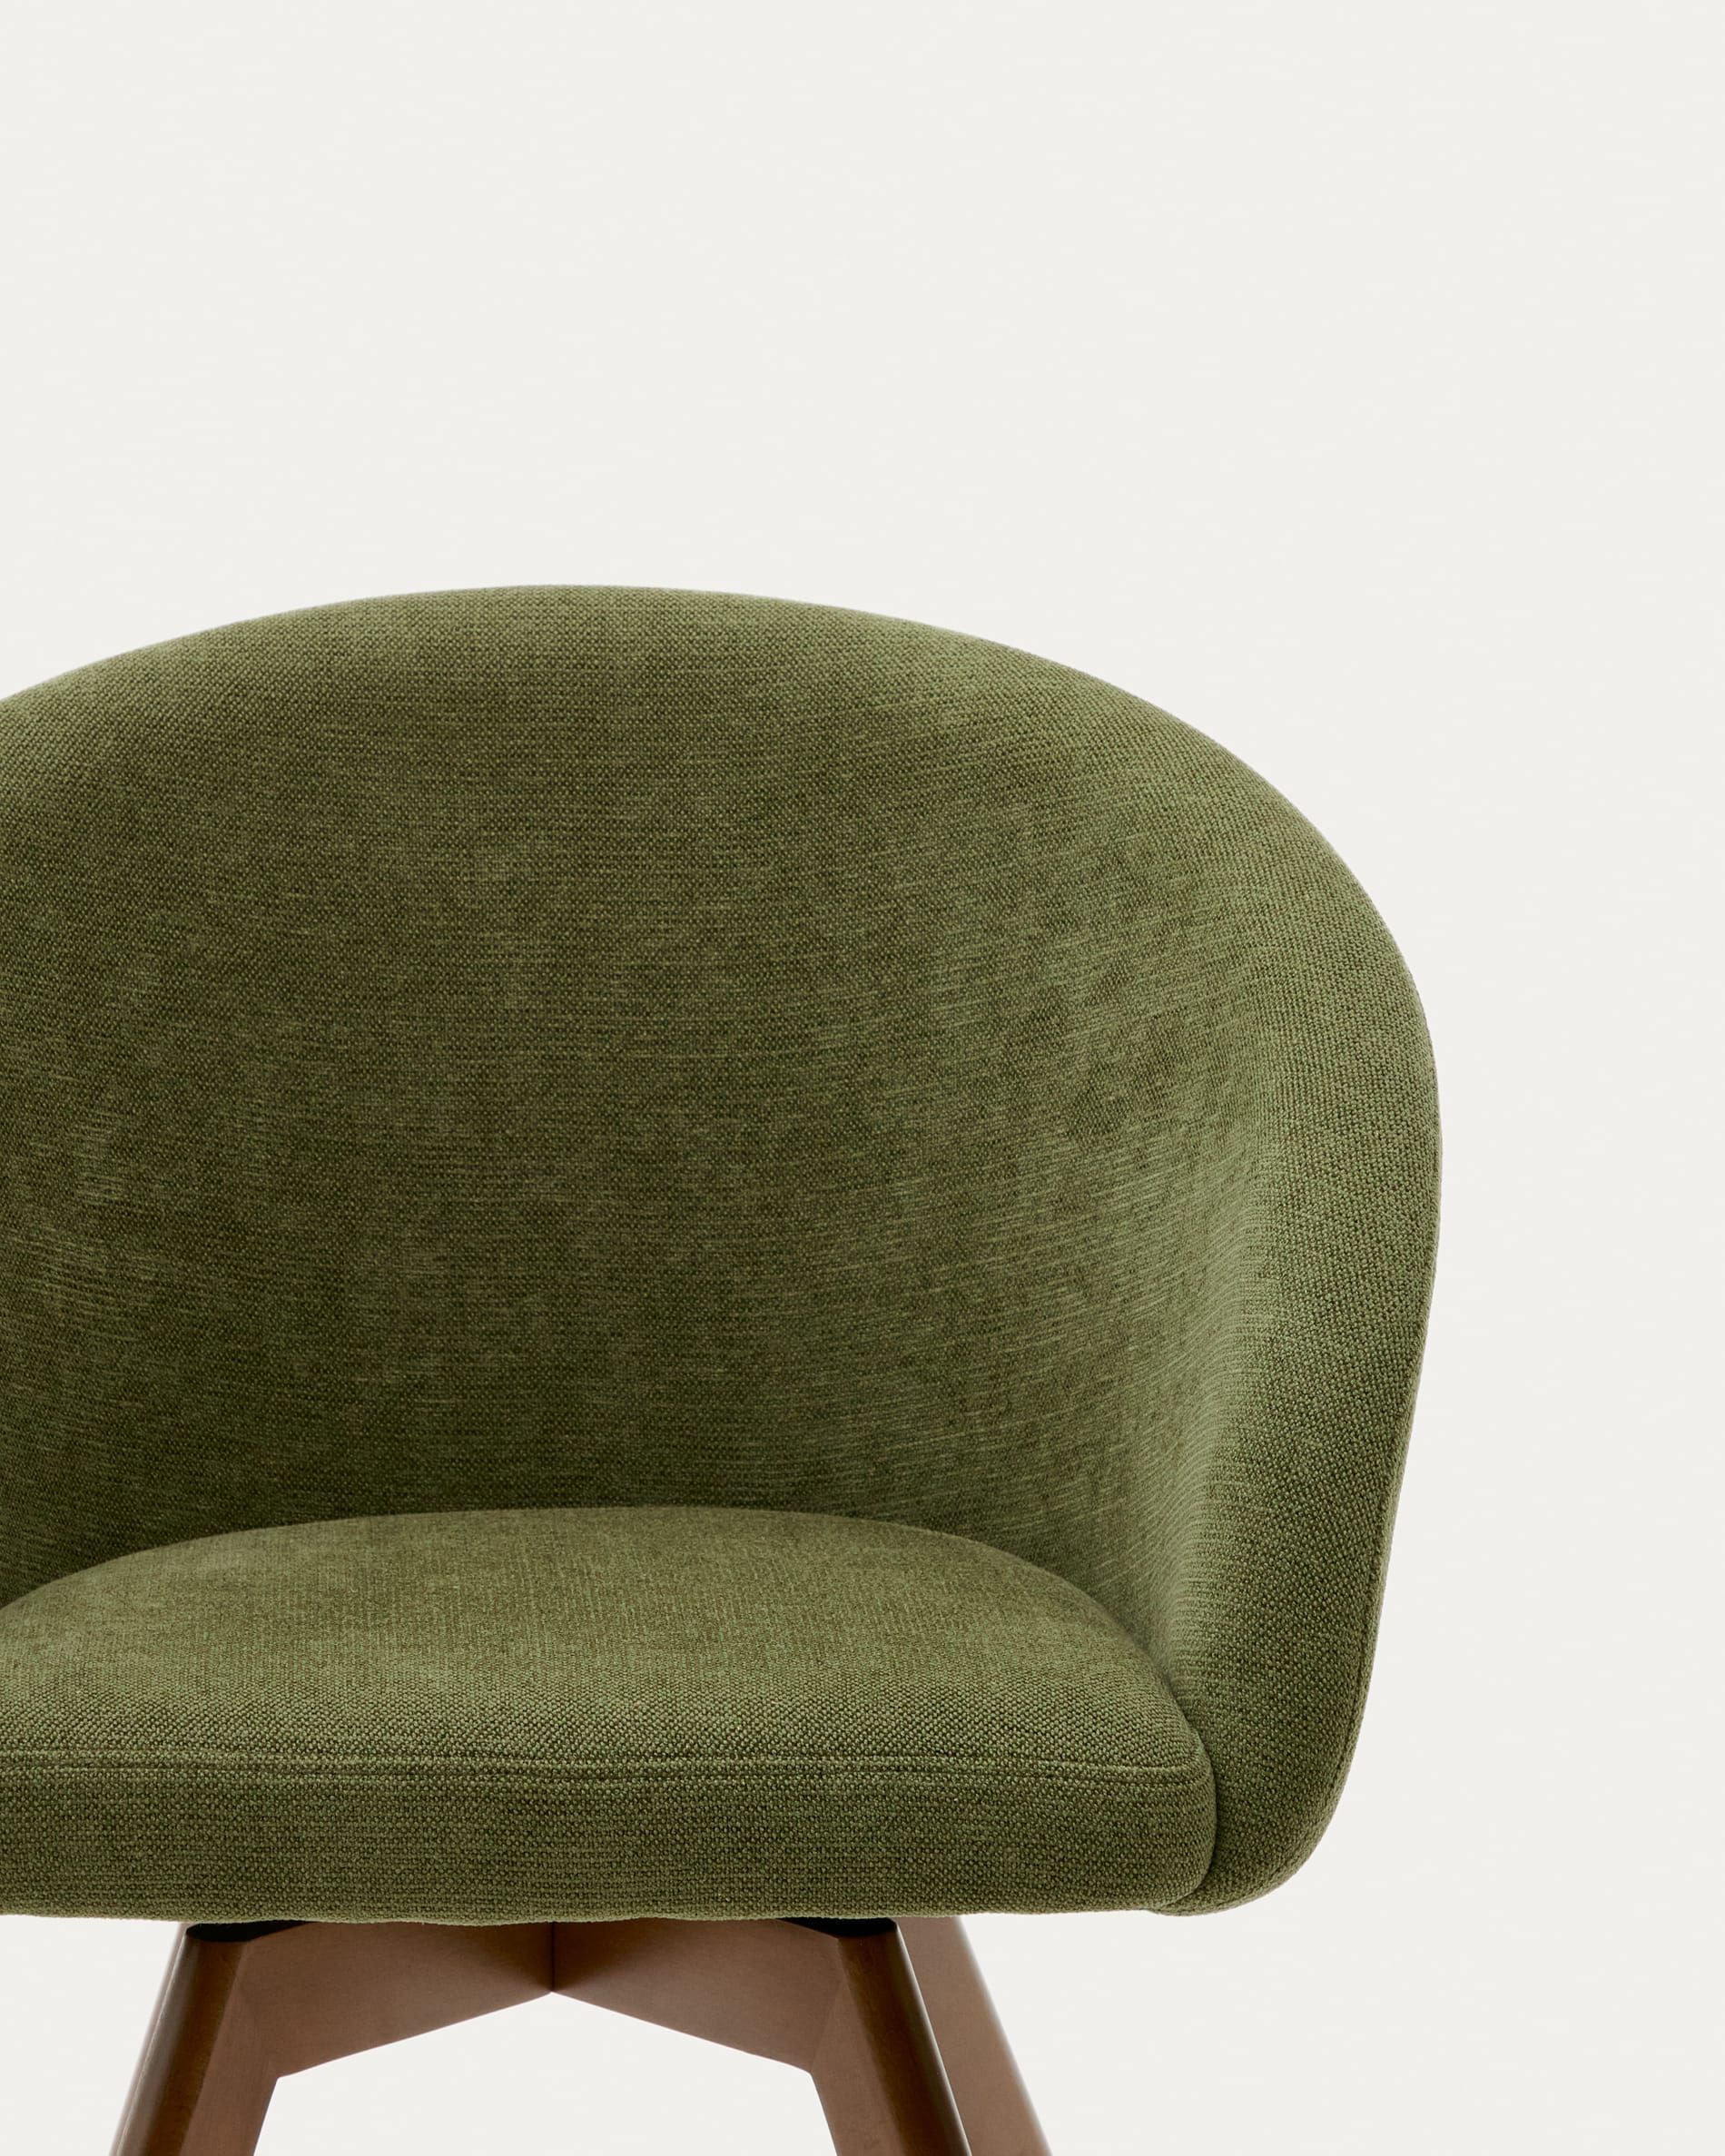 Marvin Поворотный стул из зеленой синели с ножками из ясеня Marvin